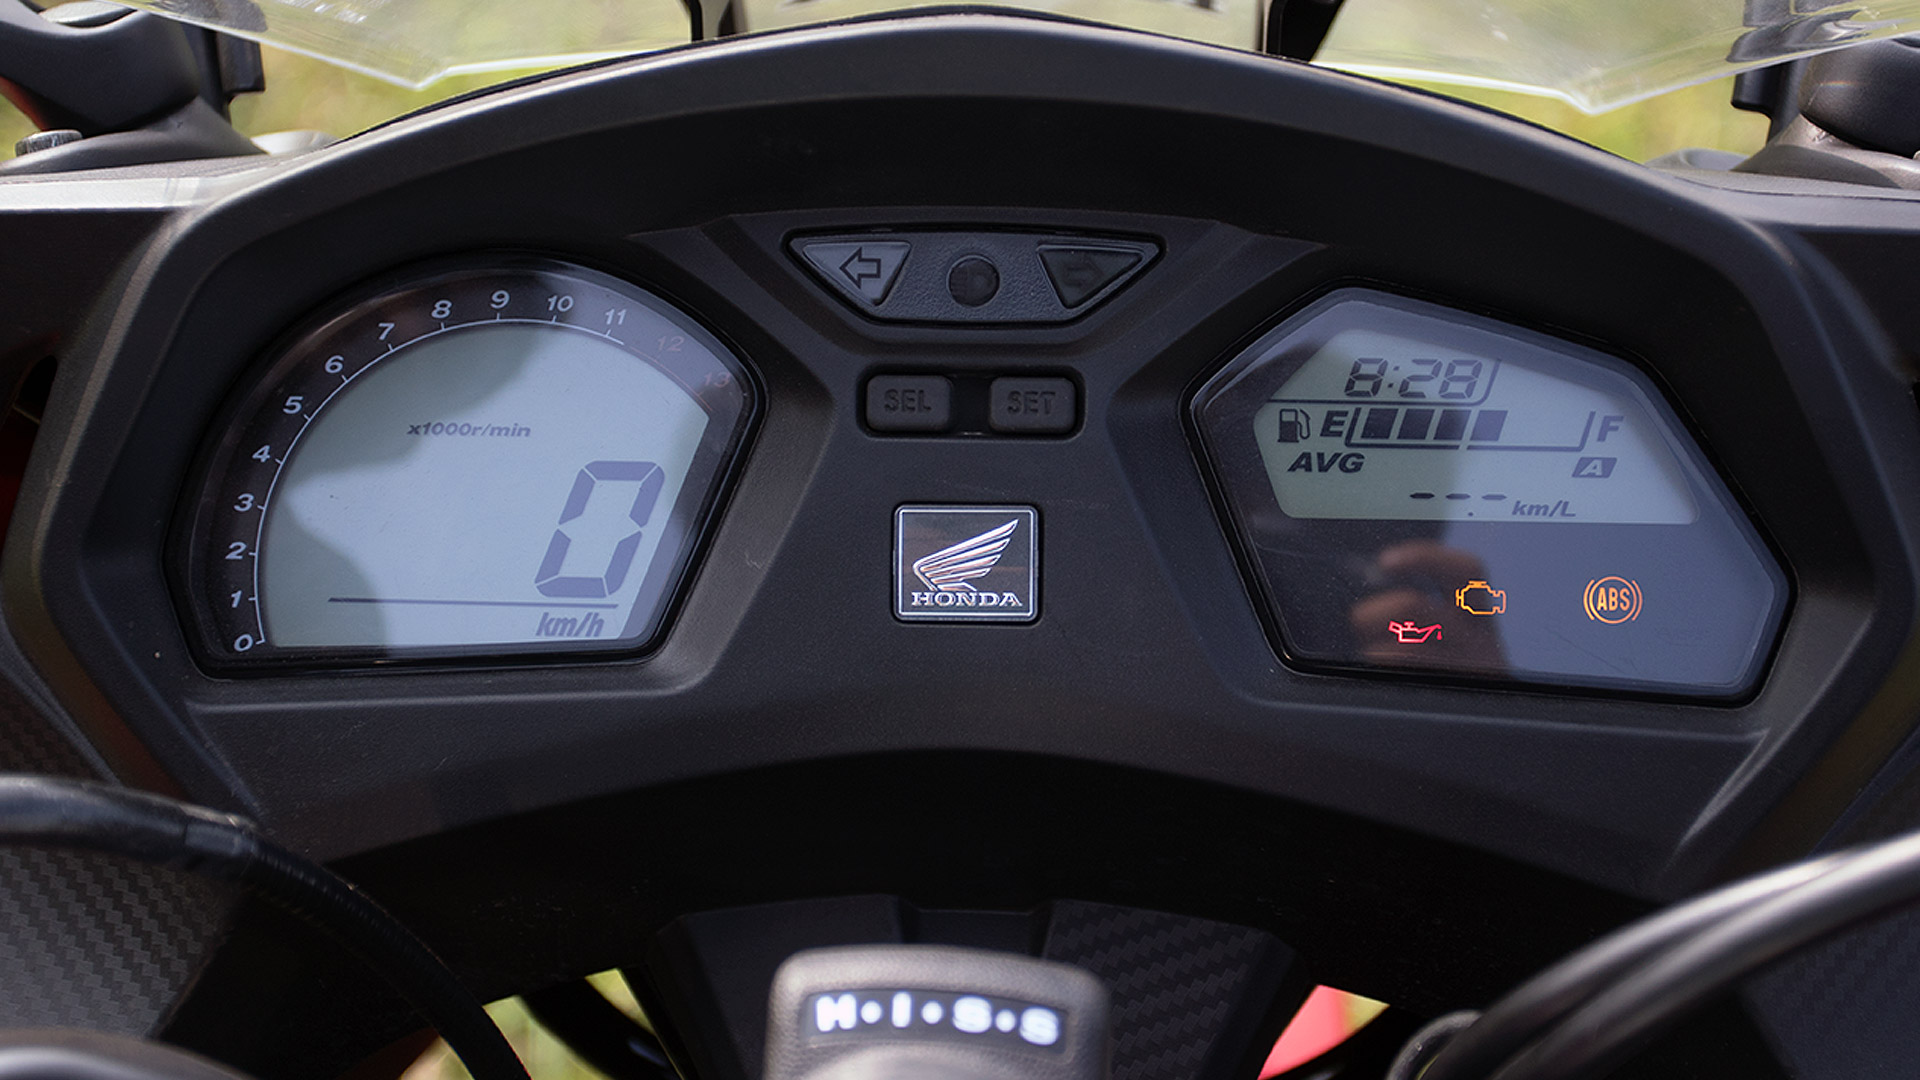 Honda CBR650F 2015 STD Compare